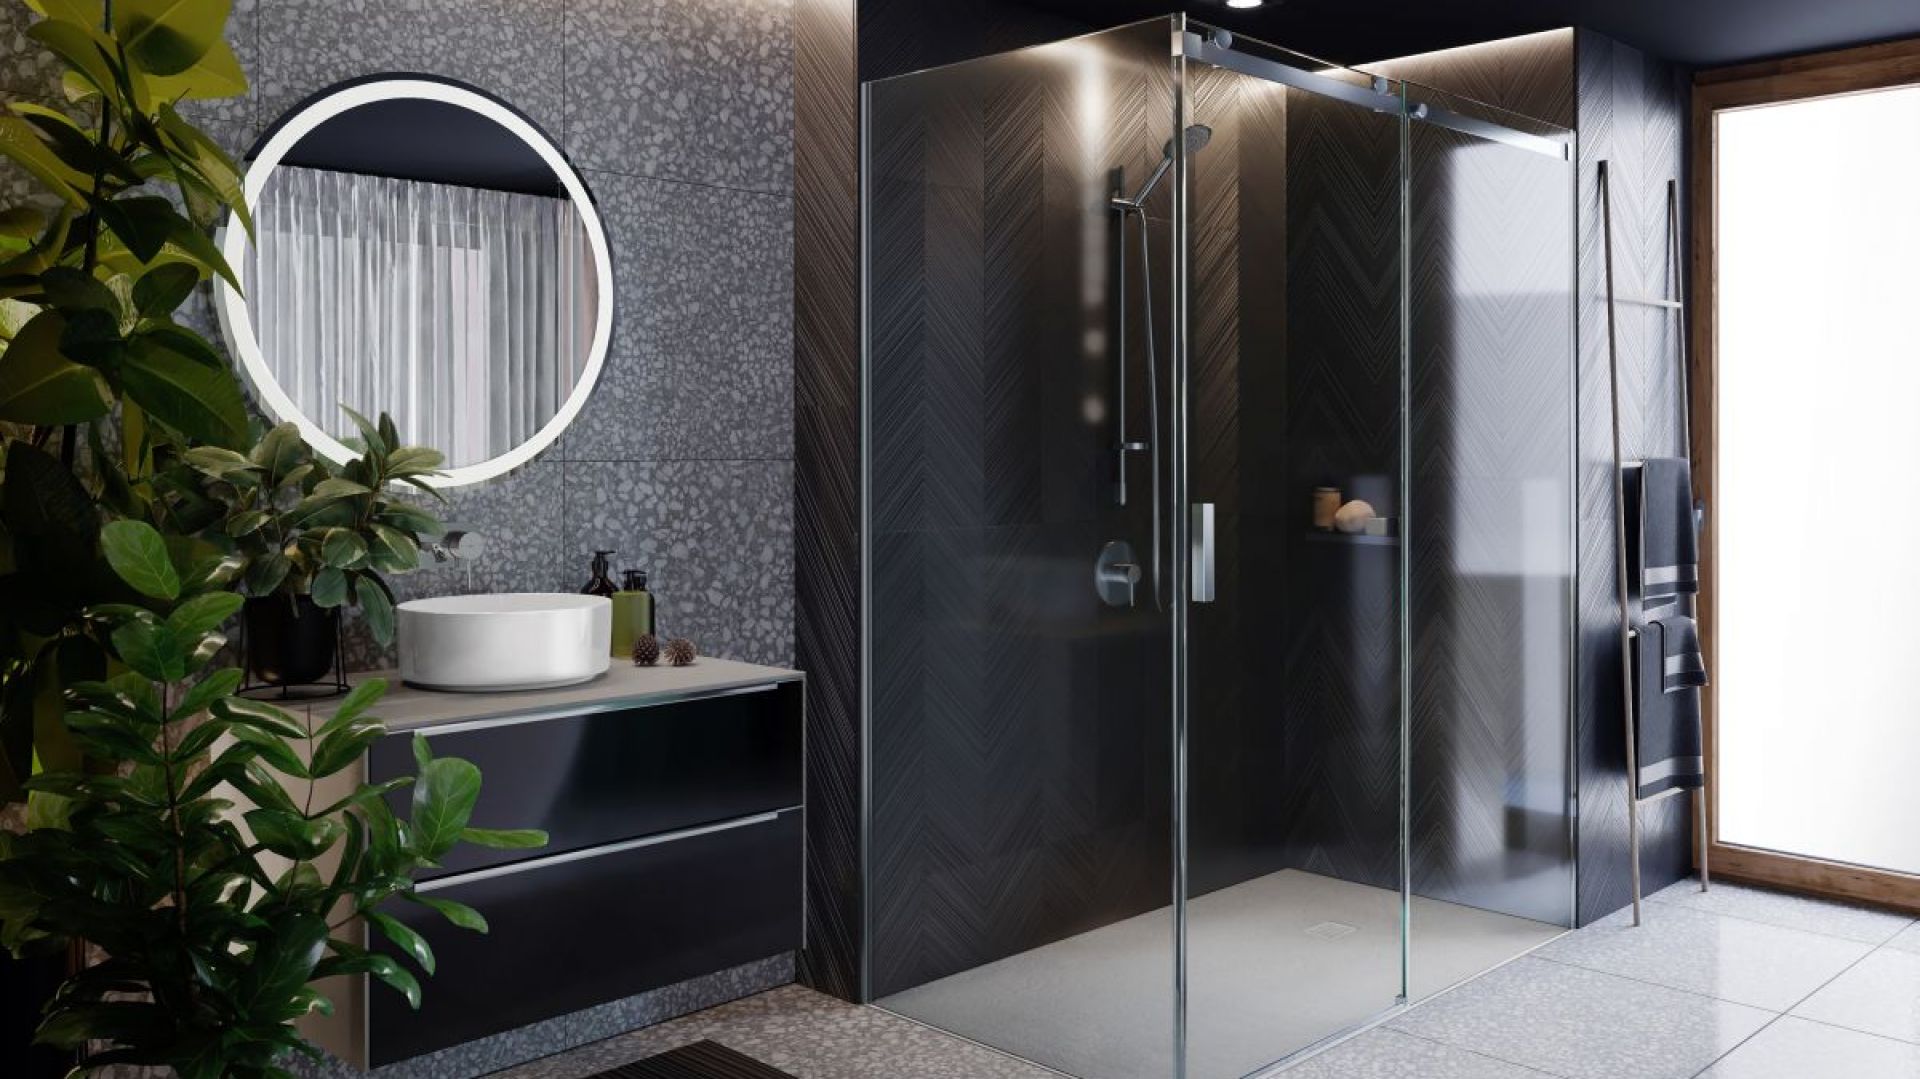 Nowoczesna strefa prysznica: nowy model kabiny w minimalistycznym stylu